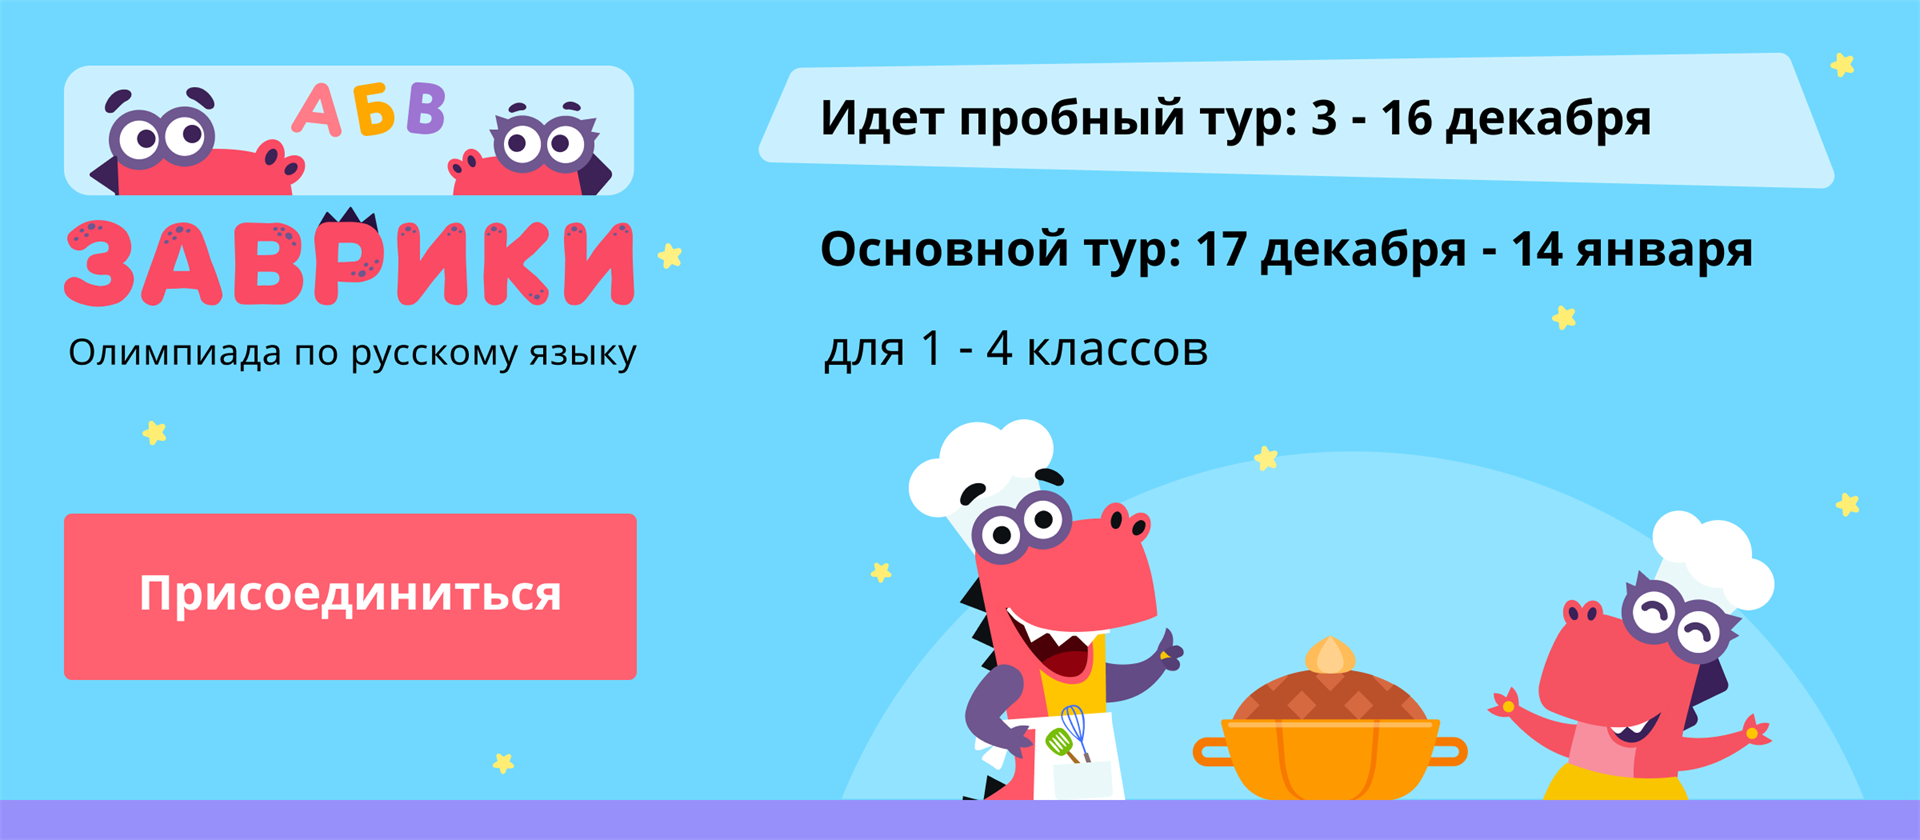 Русский язык учи ру 6 класс ответы. Учи ру. Основной тур. Пробный тур. Учи ру русский язык.